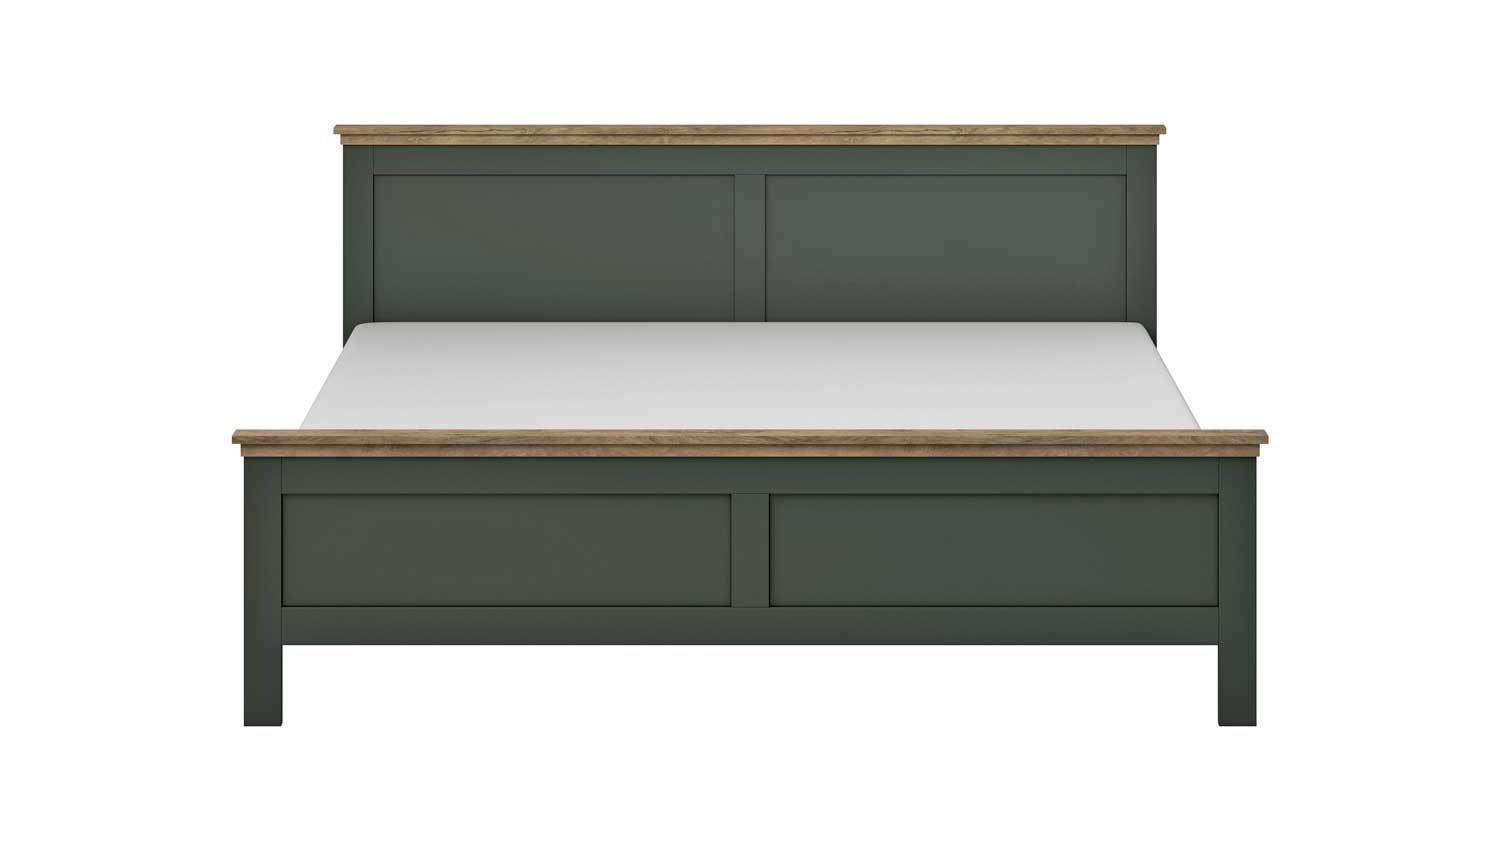 Dekor grün EVORA Eiche Lefkast 180x200cm Bett Doppelbett